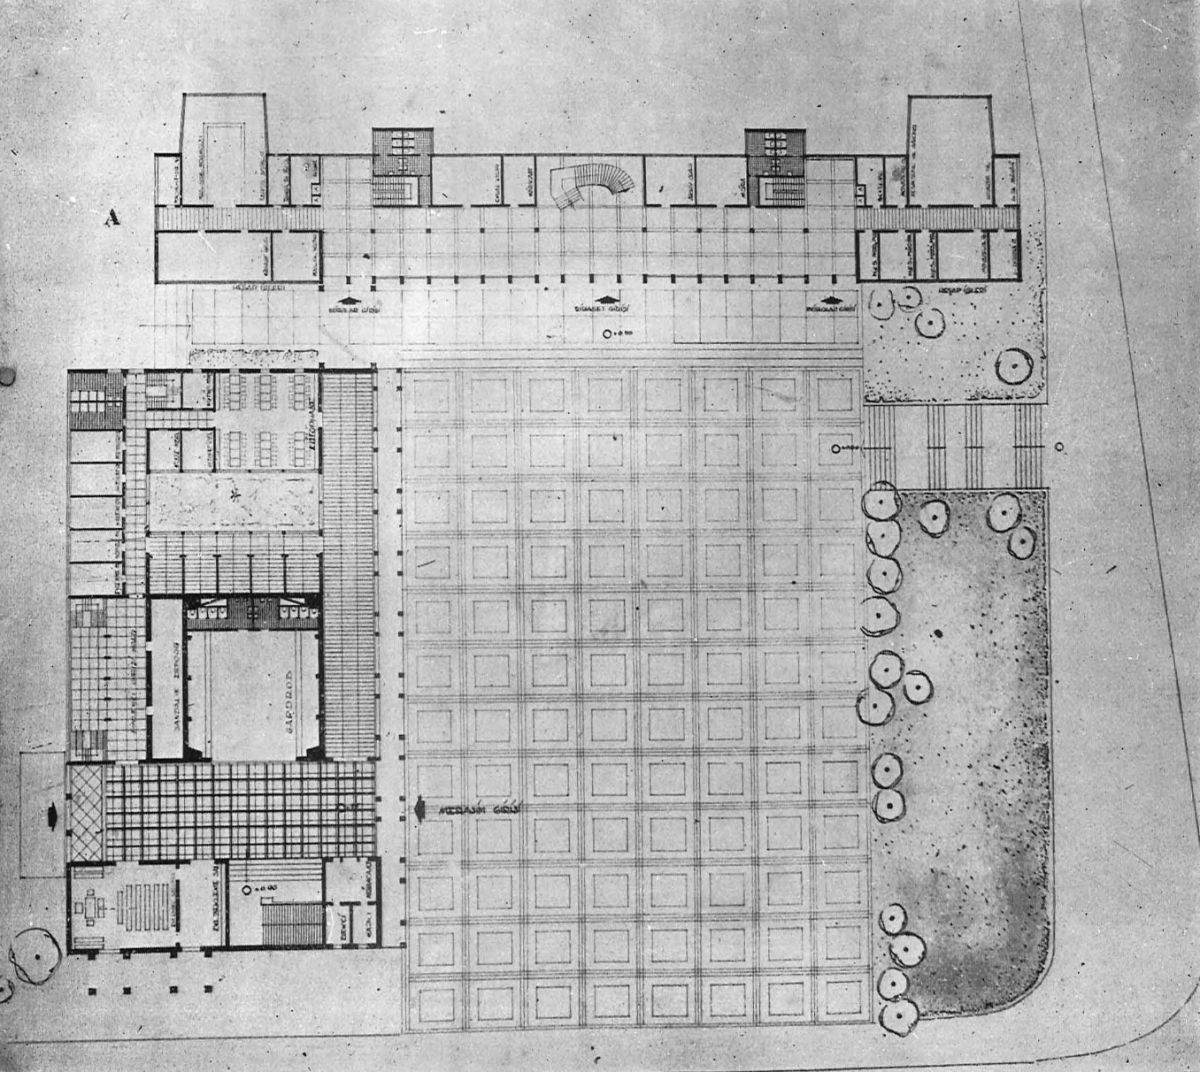 15 Istanbul Belediyesi Yarsmas 1 İstanbul Belediye Sarayı Yarışması’nda ikincilik ödülü alan projenin zemin kat planı, <i>Arkitekt</i>, Sayı: 259-260, 1953, s. 79